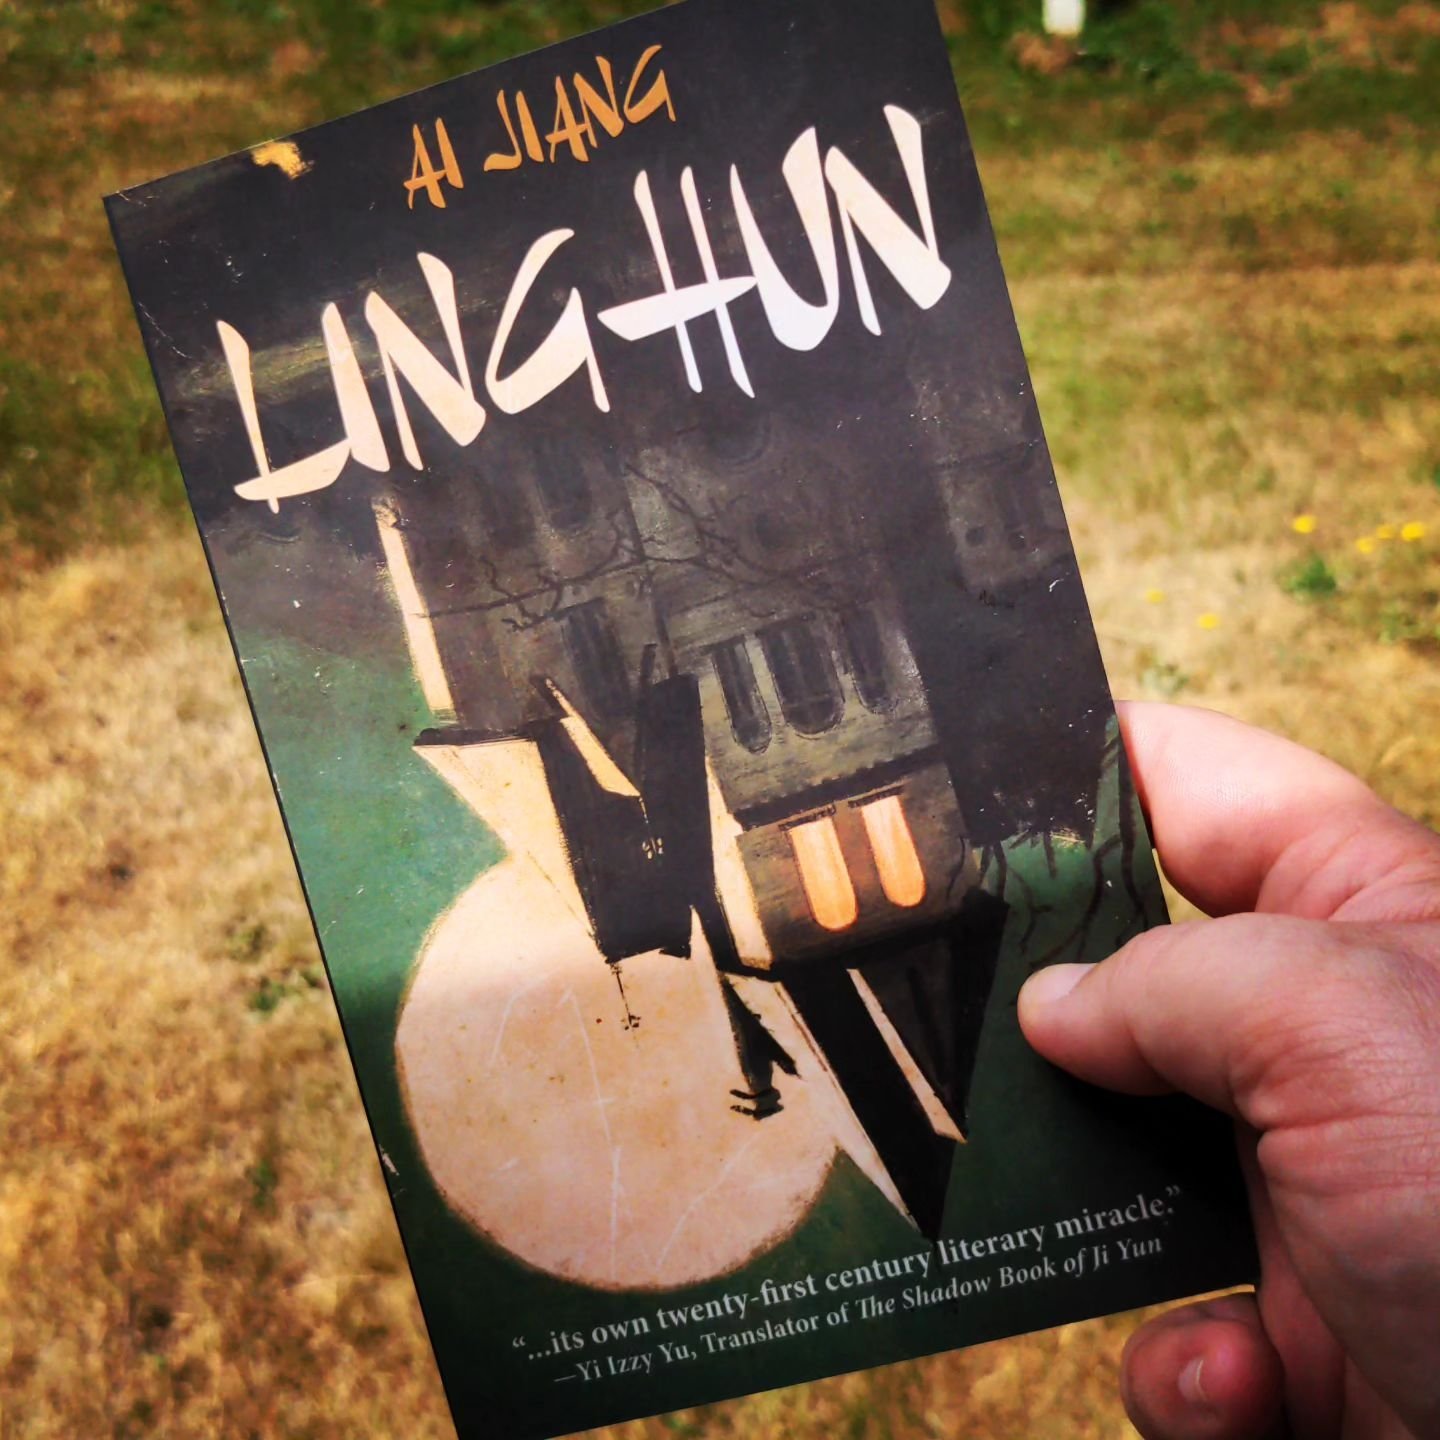 Linghun by Ai Jiang: A Review